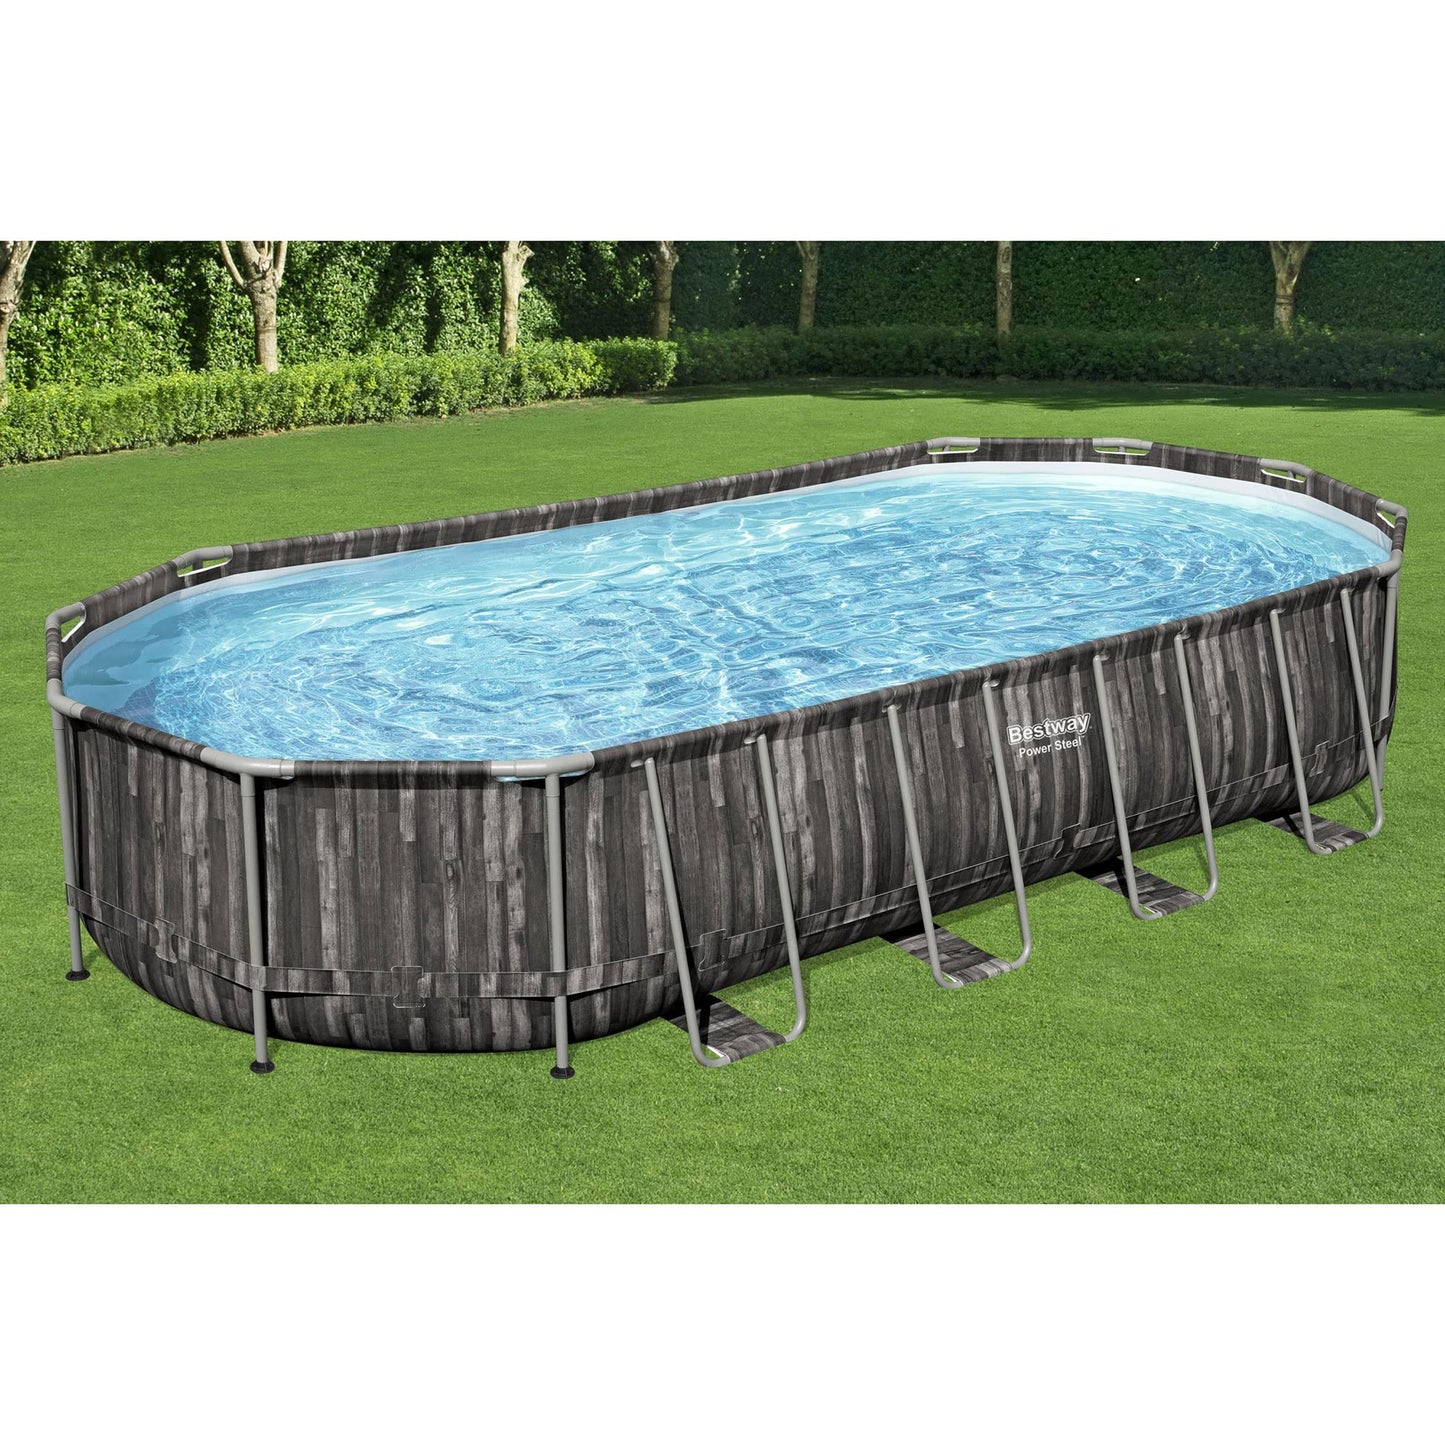 Bestway Power Steel 24' x 12' x 48" Ensemble de piscine hors sol rectangulaire à cadre métallique avec pompe de filtration 2500 GPH, échelle et couverture de piscine 24' x 12' x 28"